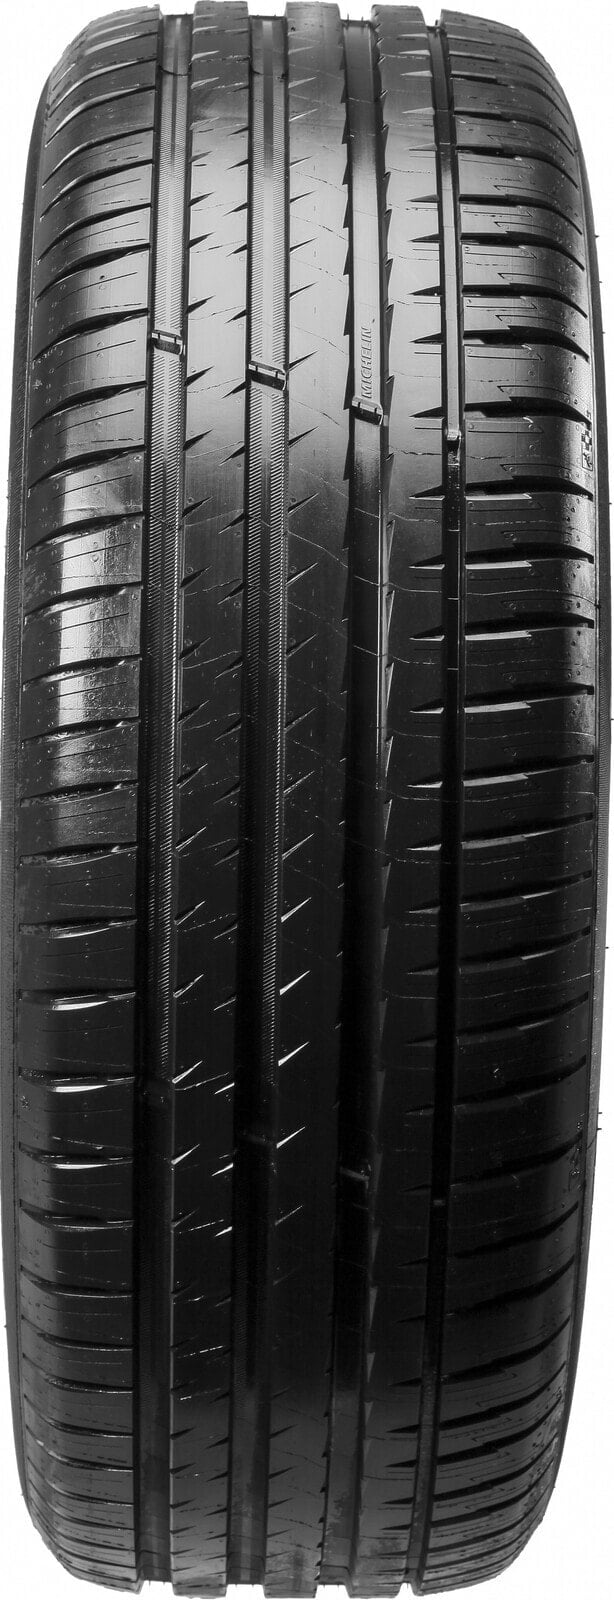 Шины для внедорожника летние Michelin Pilot Sport 4 SUV J XL DOT19 235/60 R19 107V